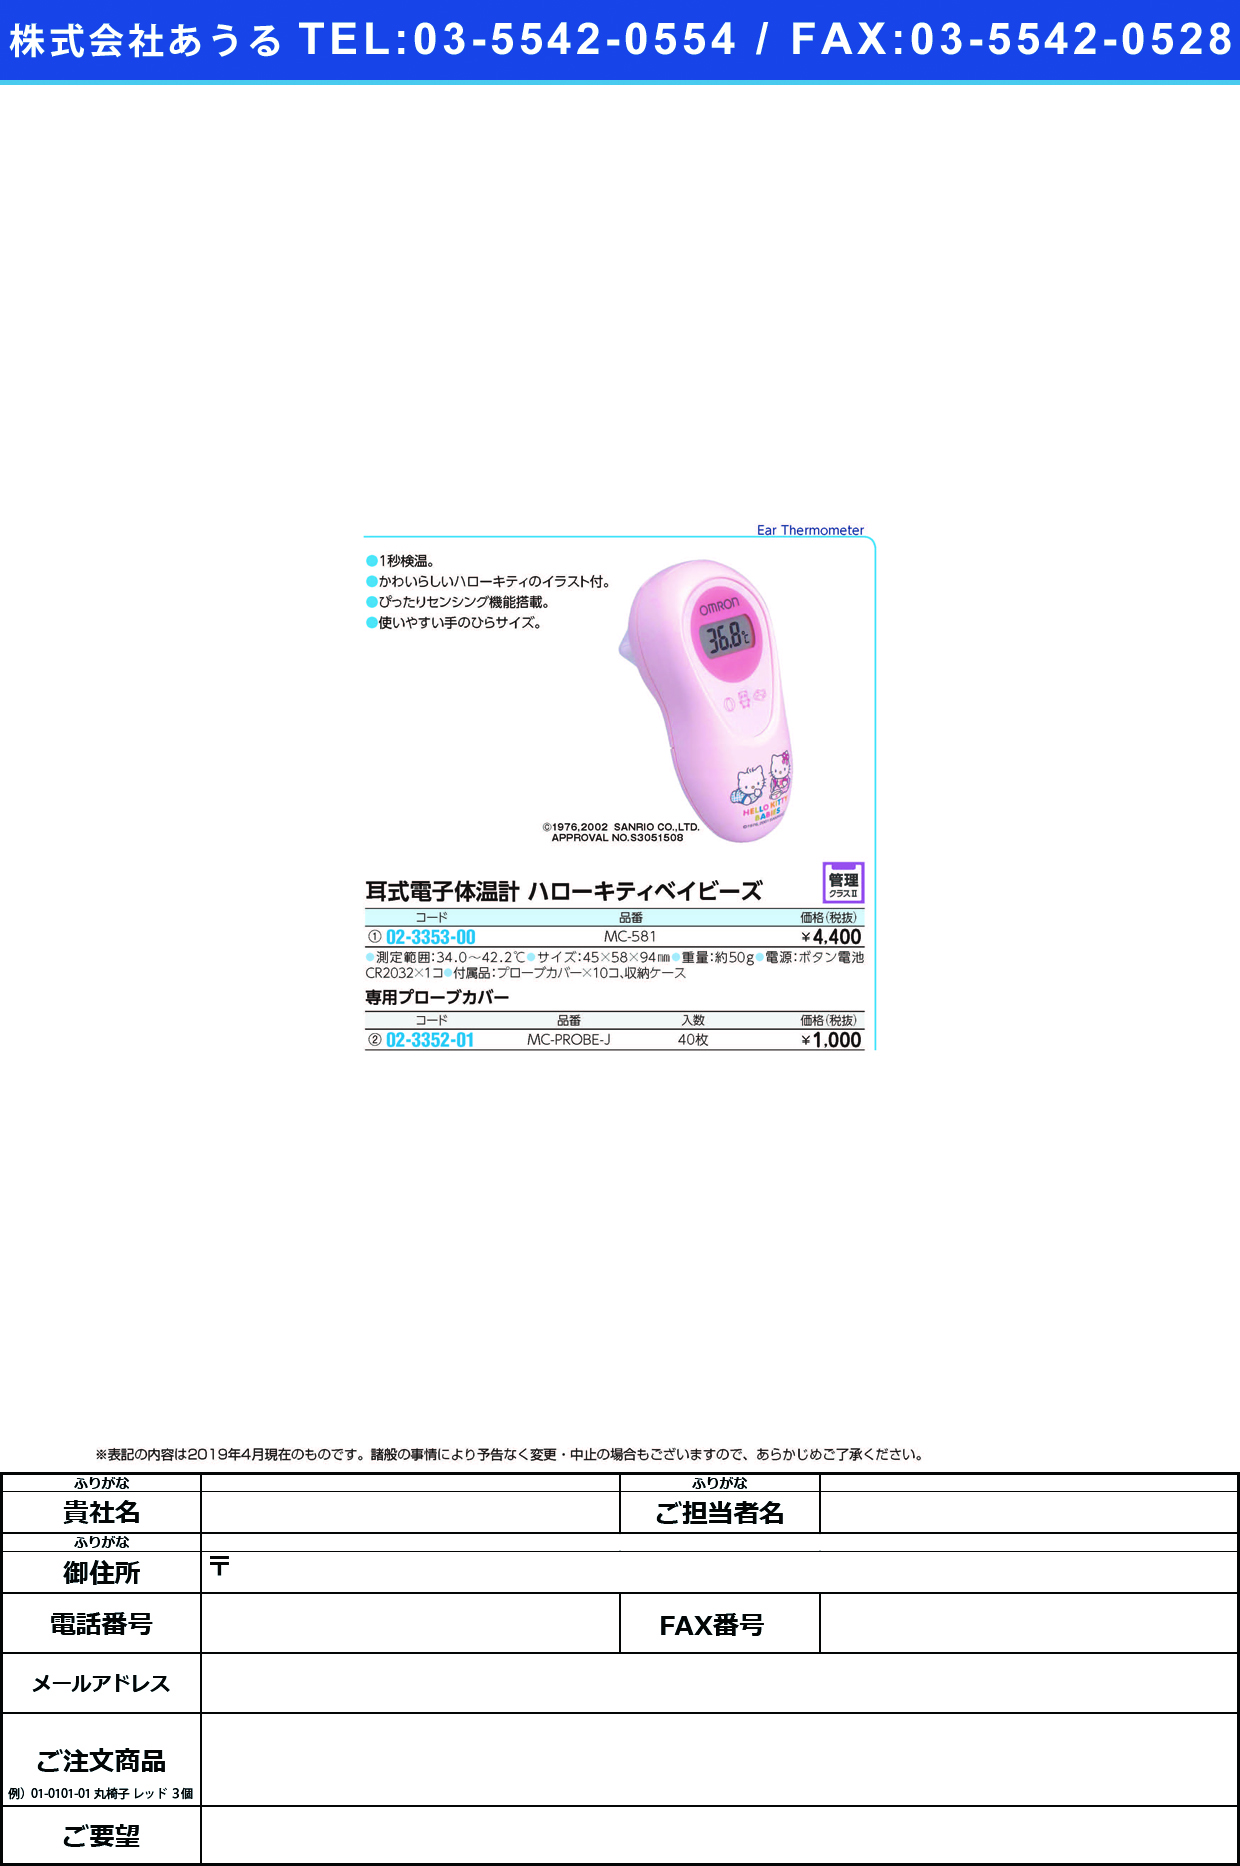 (02-3353-00)耳式体温計ハローキティ MC-581 ﾐﾐｼｷﾀｲｵﾝｹｲﾊﾛｰｷﾃｨ(フクダコーリン)【1個単位】【2019年カタログ商品】